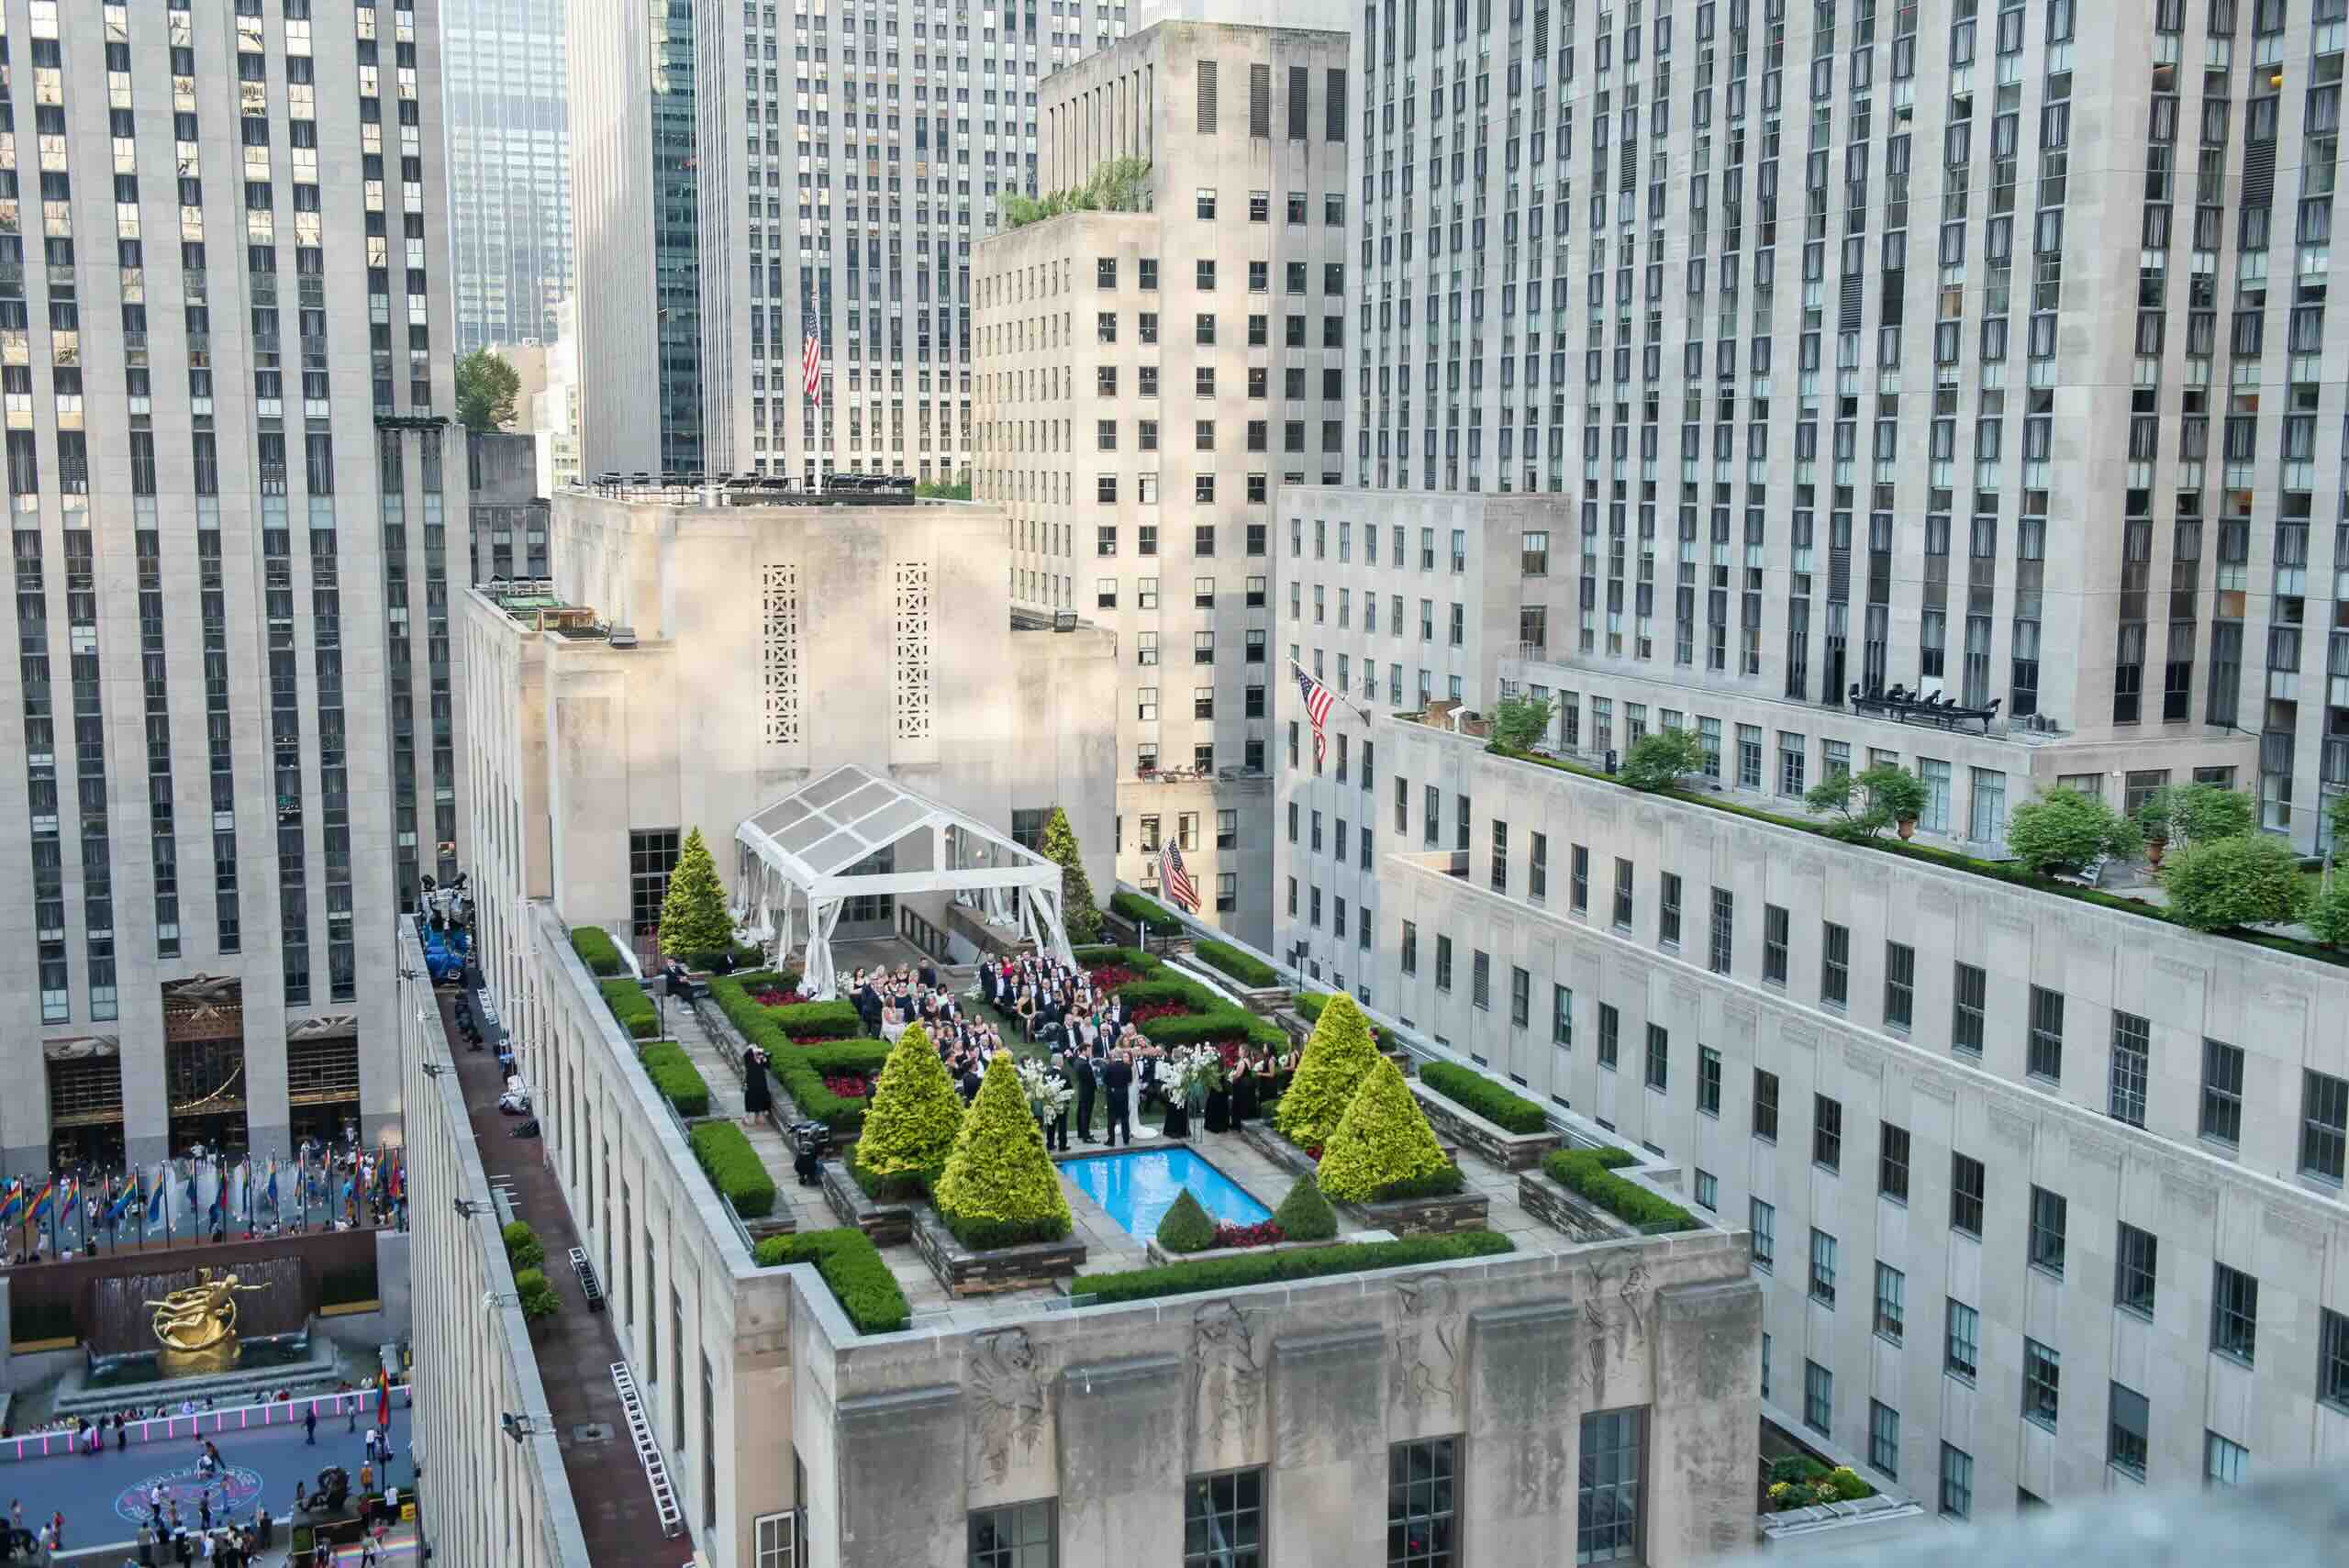 Rockefeller Rooftop Garden: How To Access